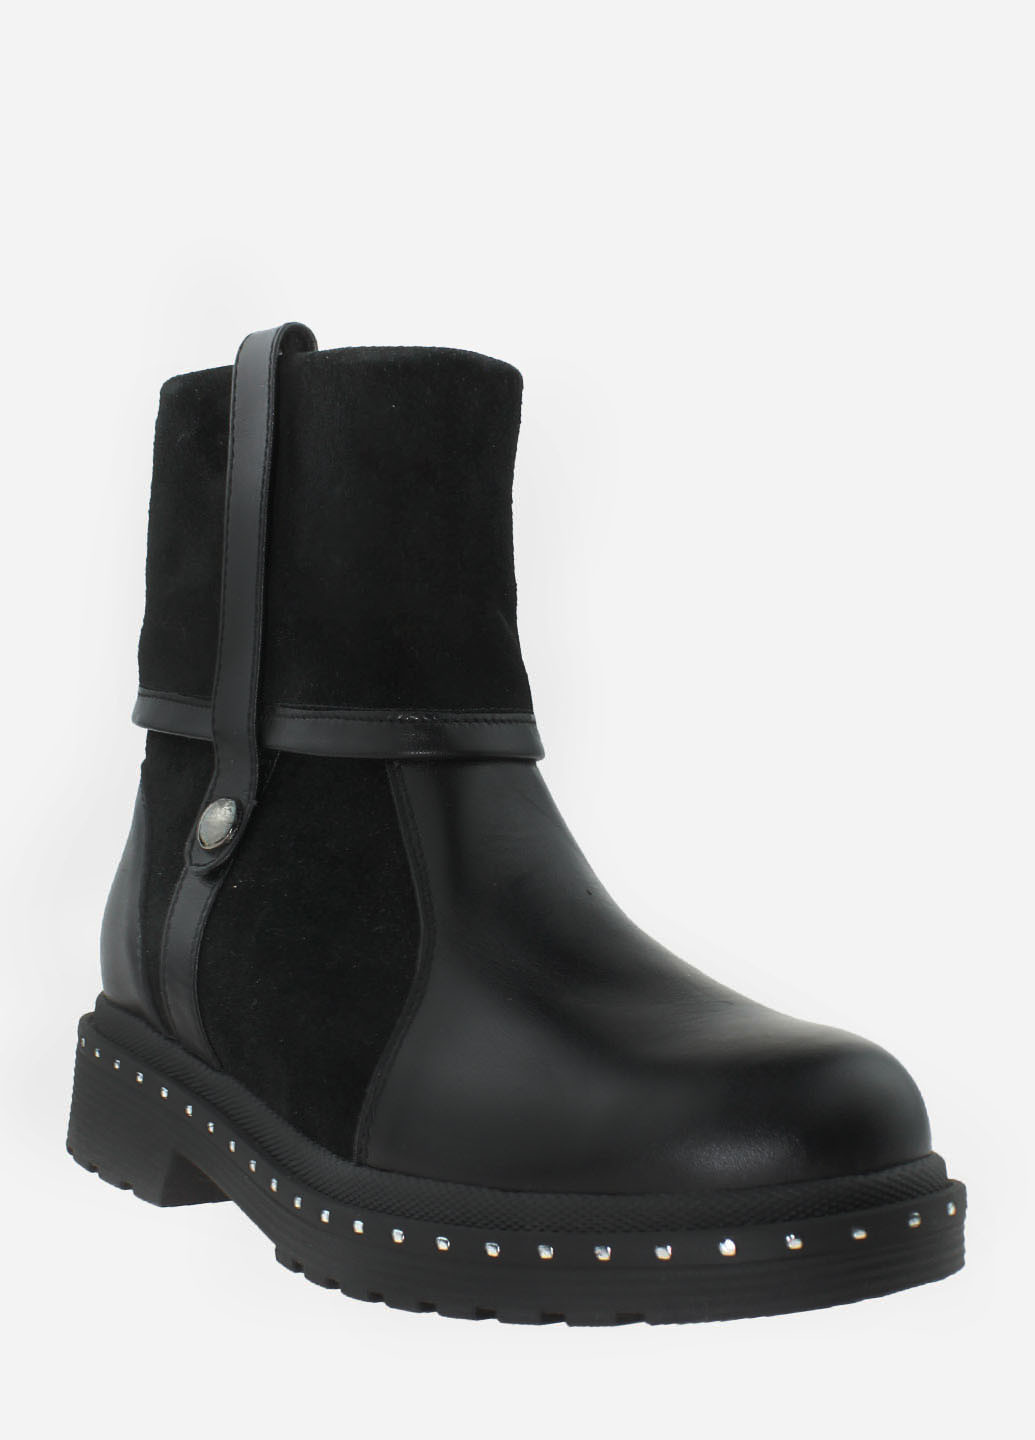 Зимние ботинки rg18-55965 черный Gampr из натуральной замши